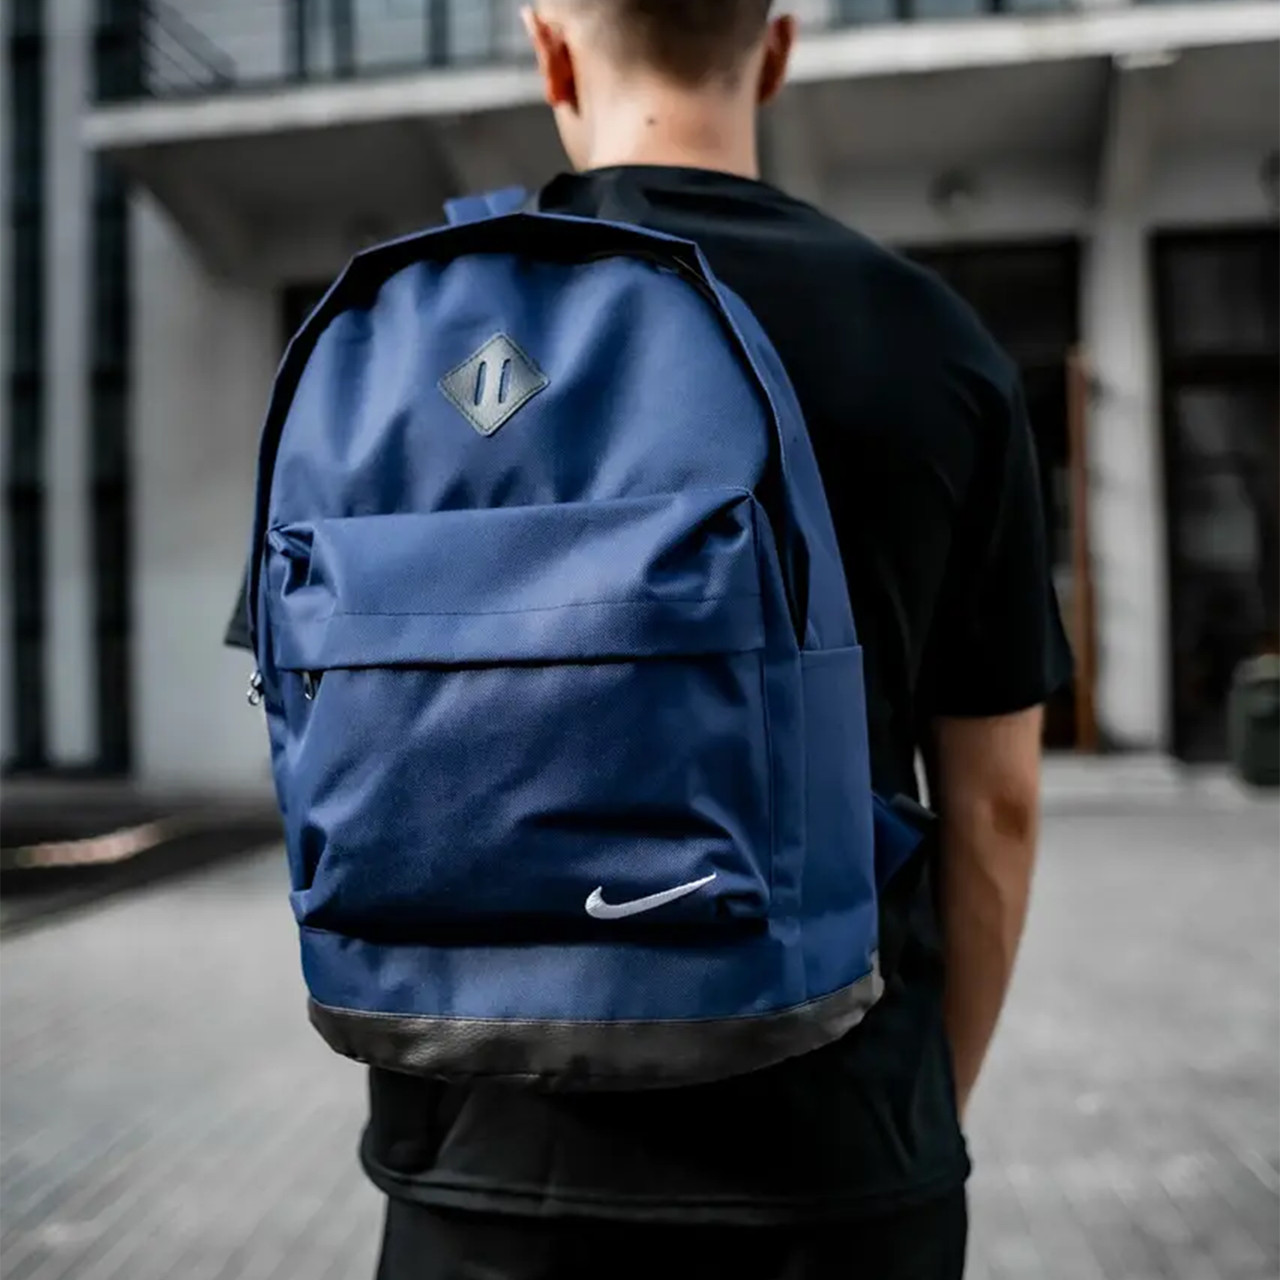 Міський рюкзак спортивний в школу Nike CL синій / Портфель Найк зі шкіряним дном повсякденний/ Шкільний рюкзак